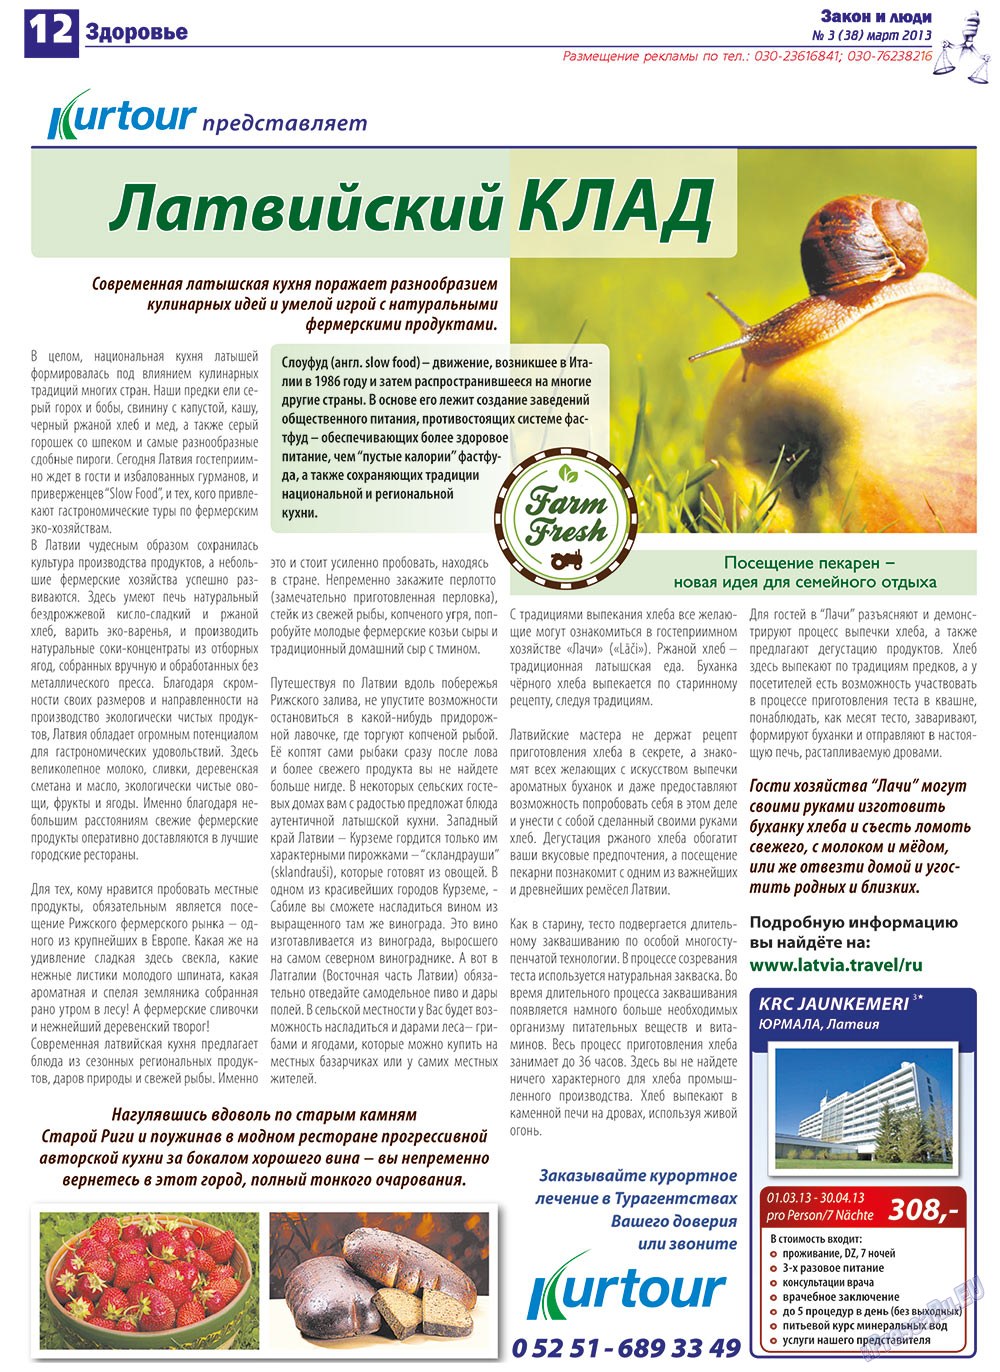 Закон и люди, газета. 2013 №3 стр.12